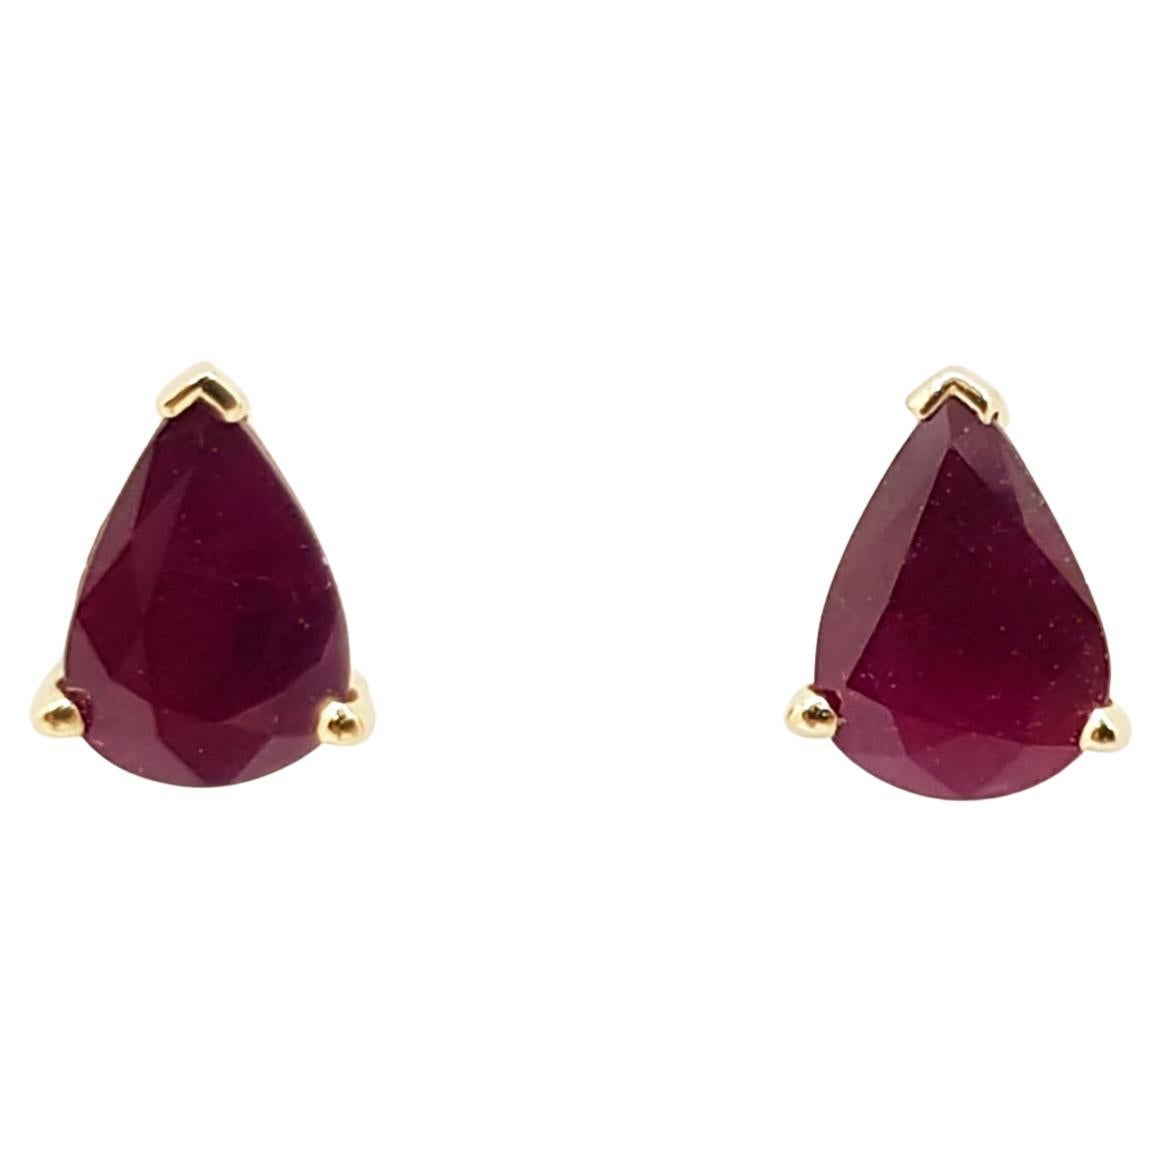 Pear Shape Ruby Stud Earrings Set in 14 Karat Gold Settings